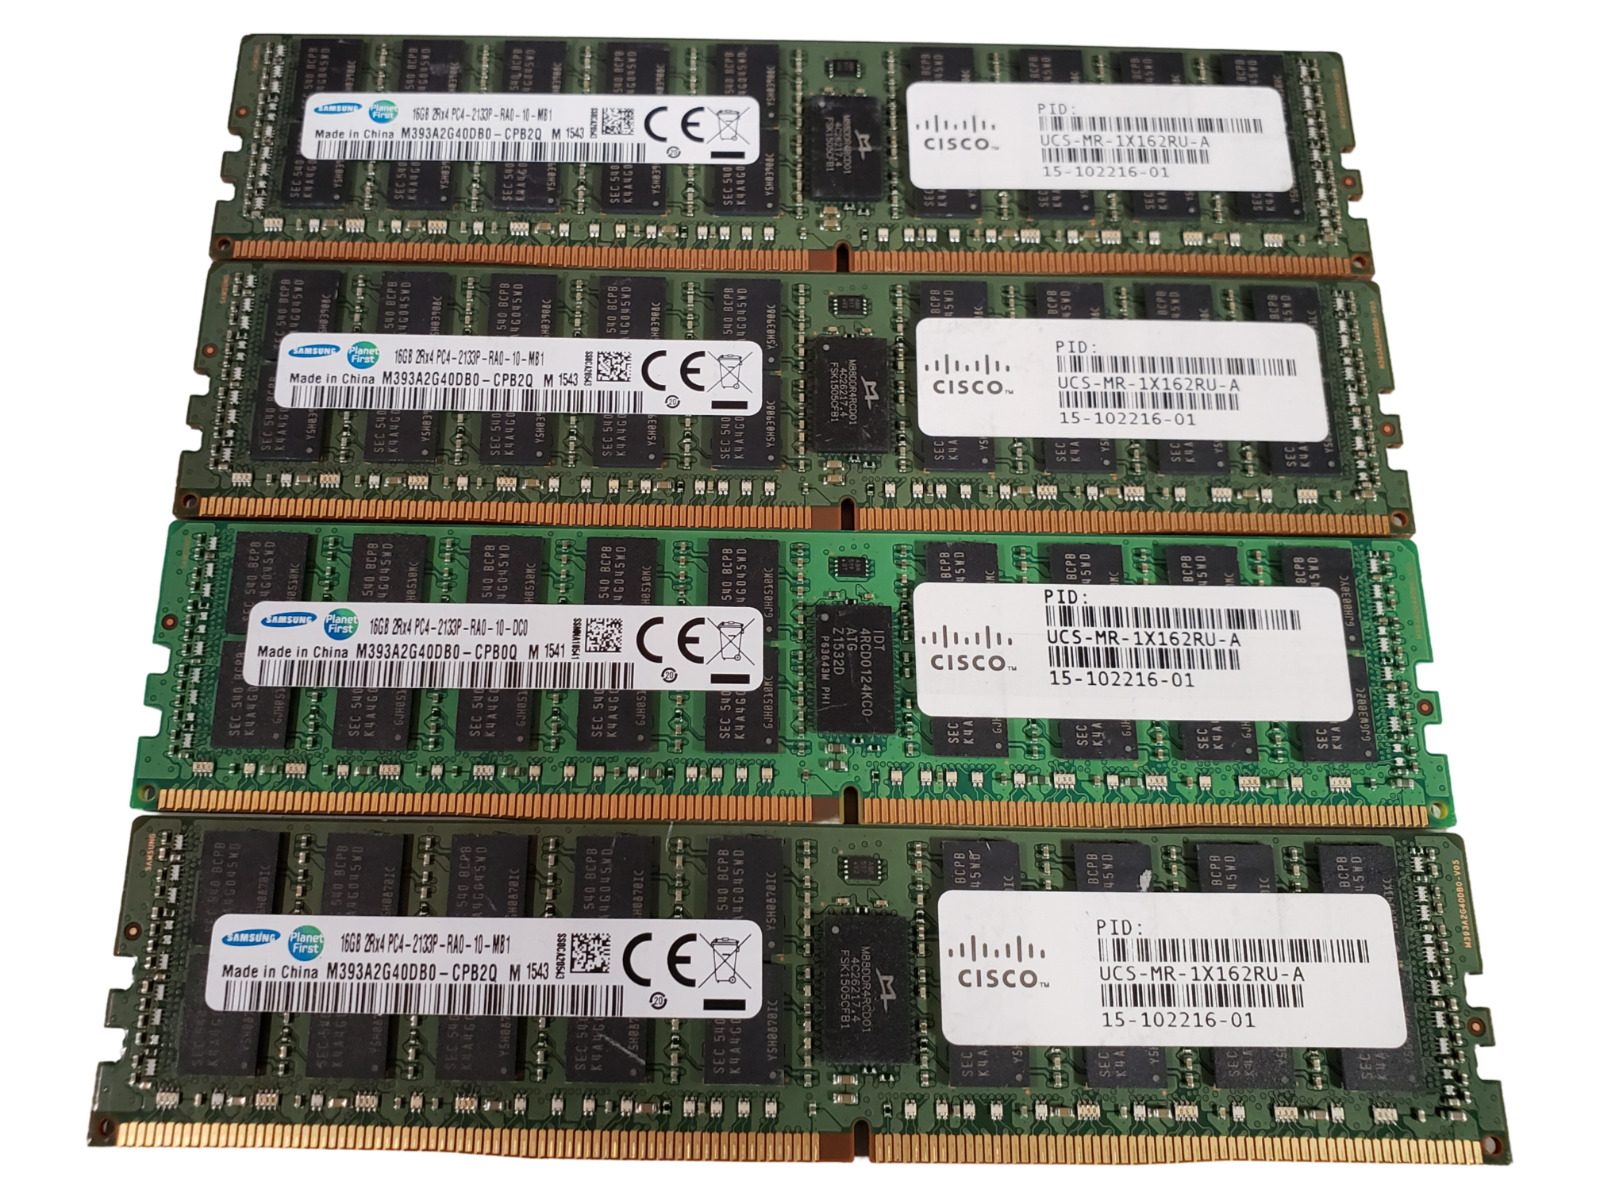 (4 Piece) Cisco Samsung M393A2G40DB0-CPB 15-102216-01 DDR4-2133 64GB Server RAM